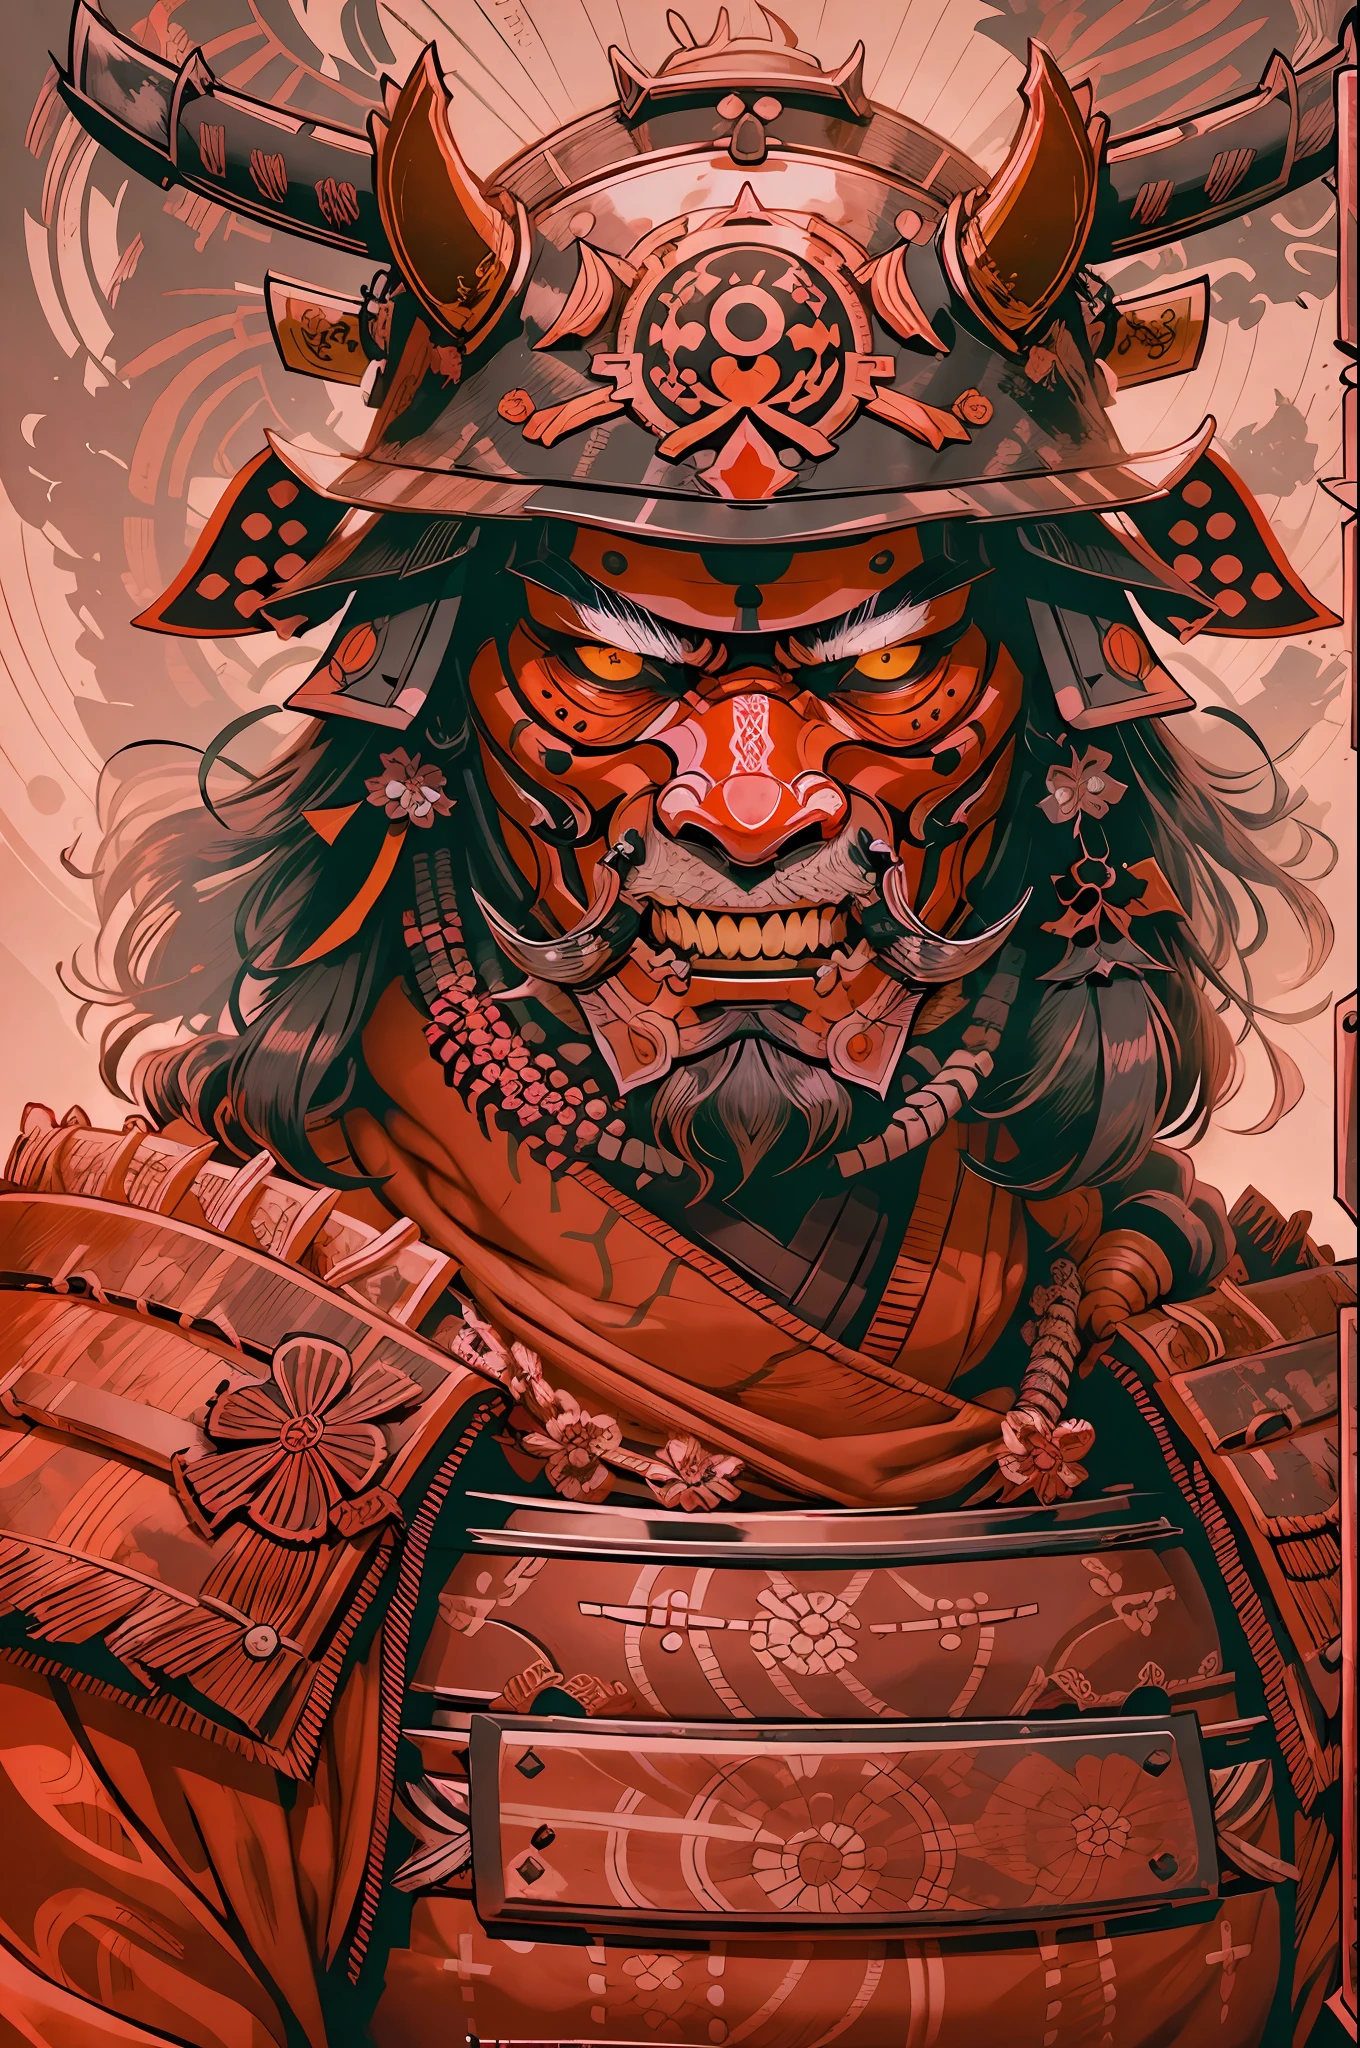 samurai, Casco rojo, máscara en la boca, visible eyes, Cara y casco detallados, primer plano de la cara, ilustración, FRENTE AL ESPECTADOR, obra prima,muy detallado.